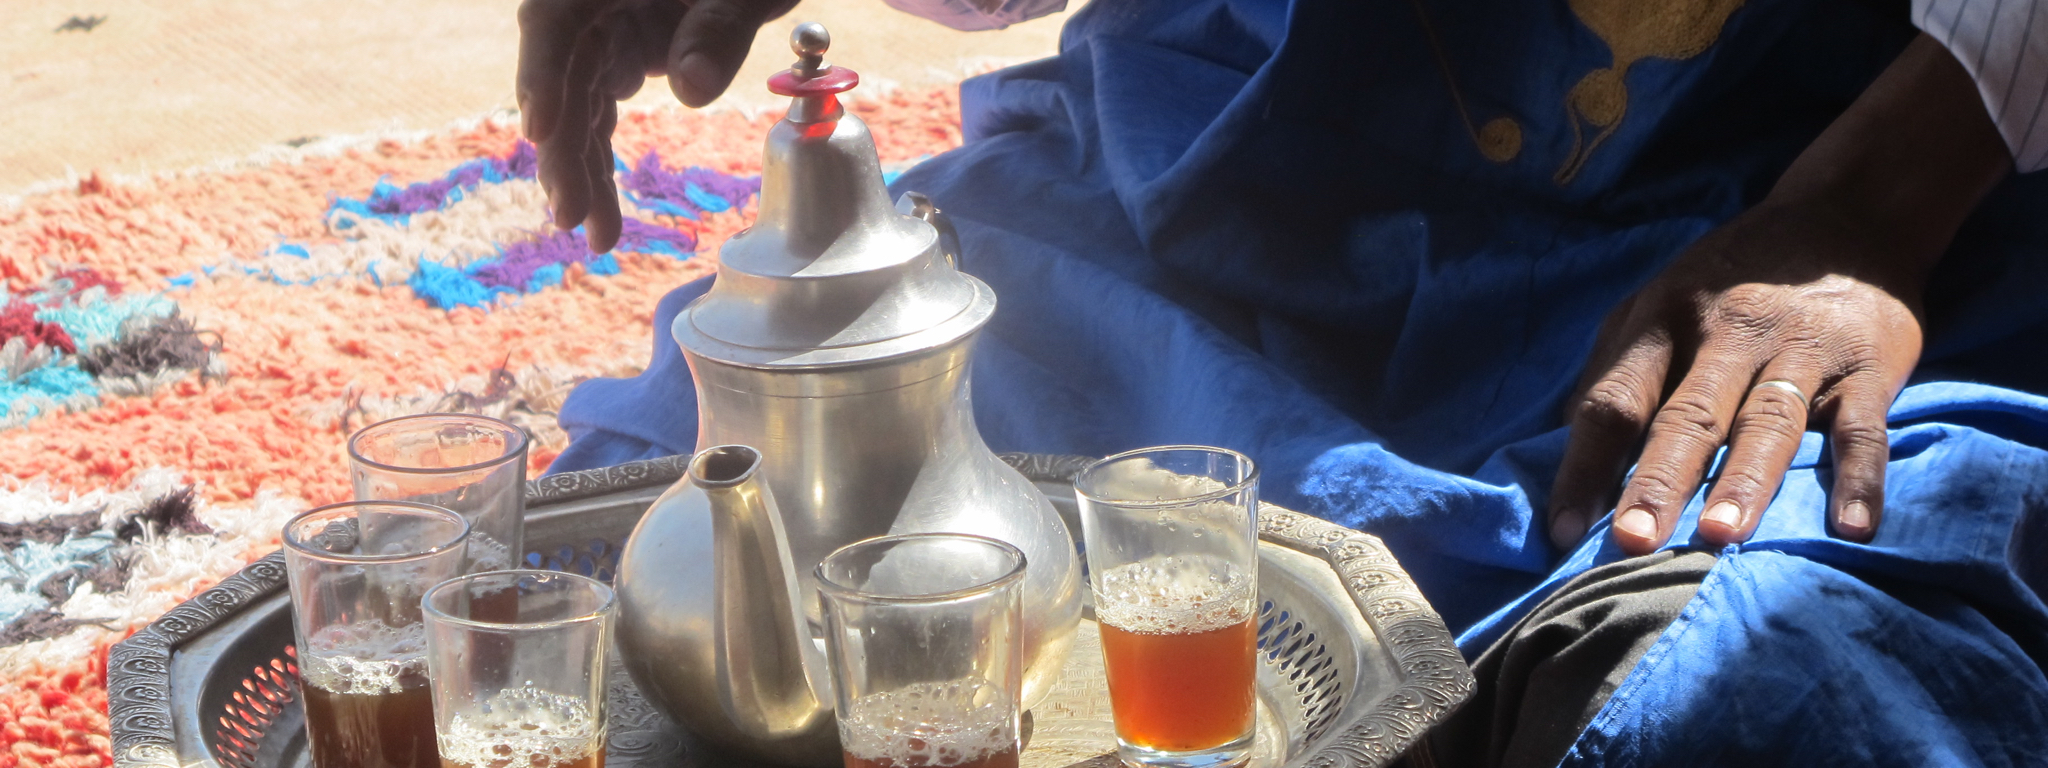 Rondreis Marokko - maak kennis met de lokale berbers terwijl je door de Atlas reist en geniet van de lokale gastvrijheid en gewoontes